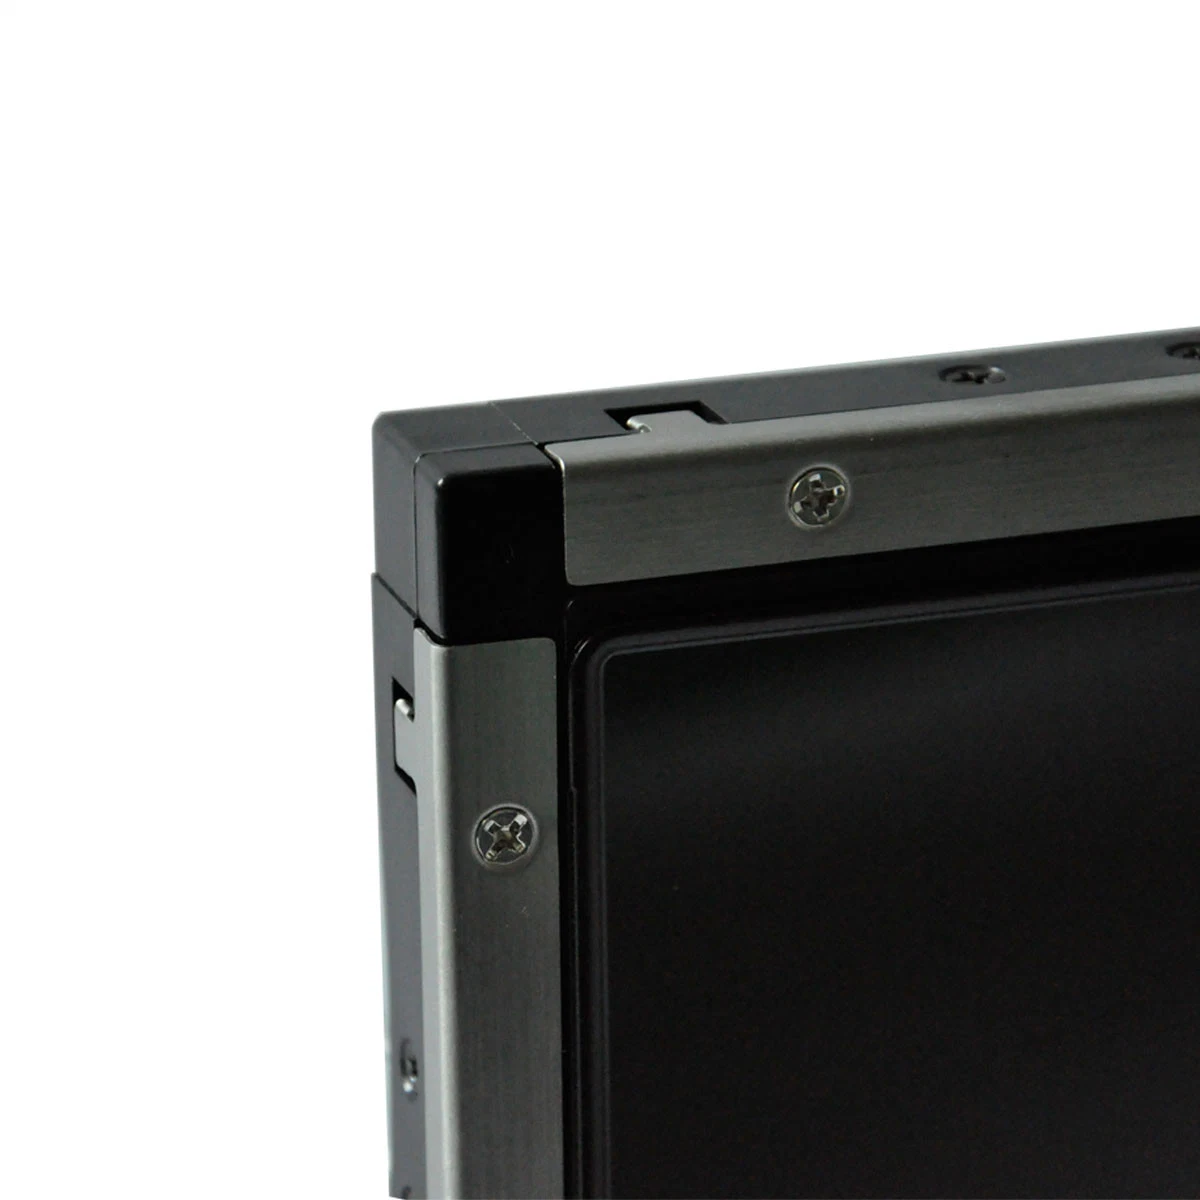 شاشة عرض TFT LCD تعمل بالأشعة تحت الحمراء بحجم 15 بوصة، كشك شاشة تعمل بالأشعة تحت الحمراء تعمل بالأشعة تحت الحمراء تلفزيون Elo 150 بوصة مقاوم للماء من Openframe